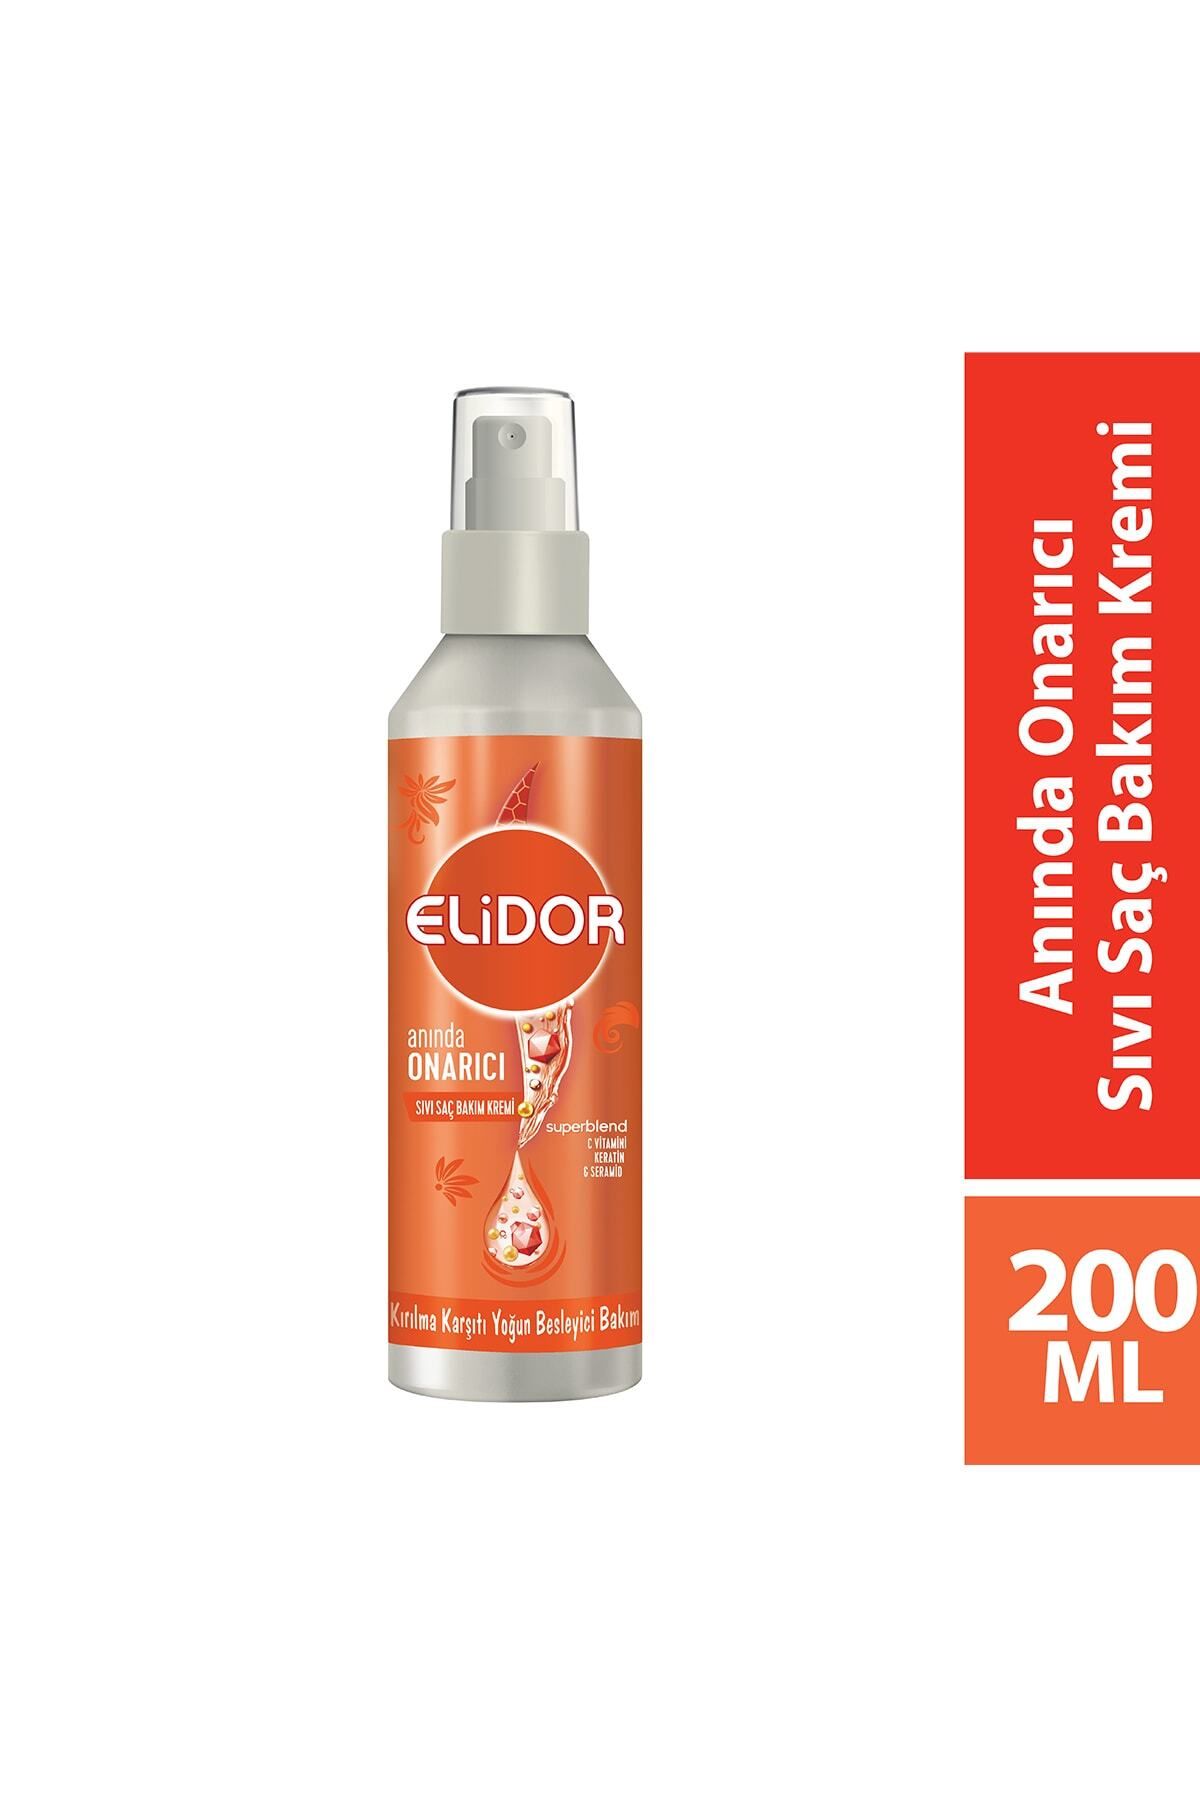 Elidor Superblend Sıvı Saç Bakım Kremi Anında Onarıcı Kırılma Karşıtı Yoğun Besleyici 200 Ml